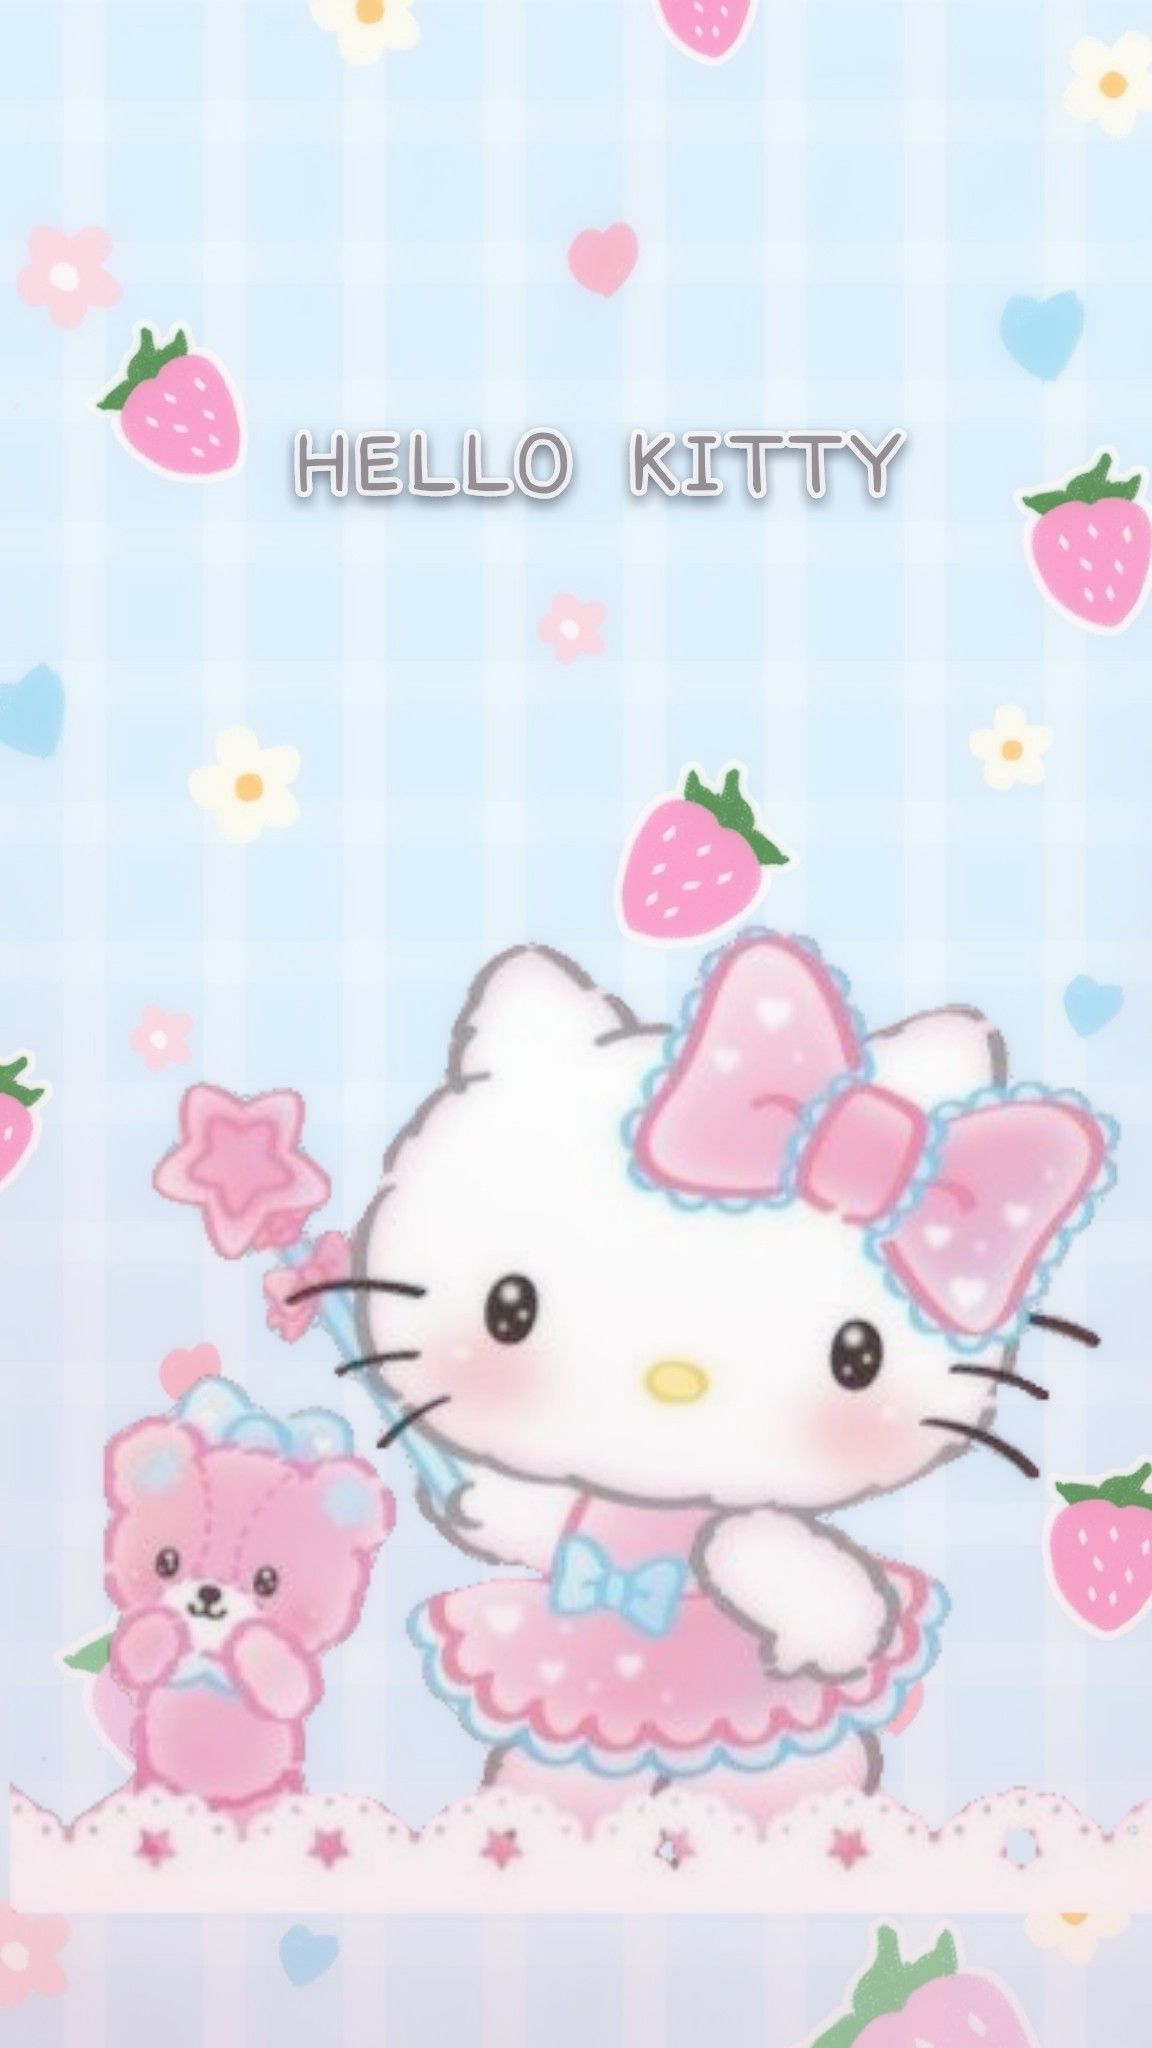 On Hello Kitty Wallpaper